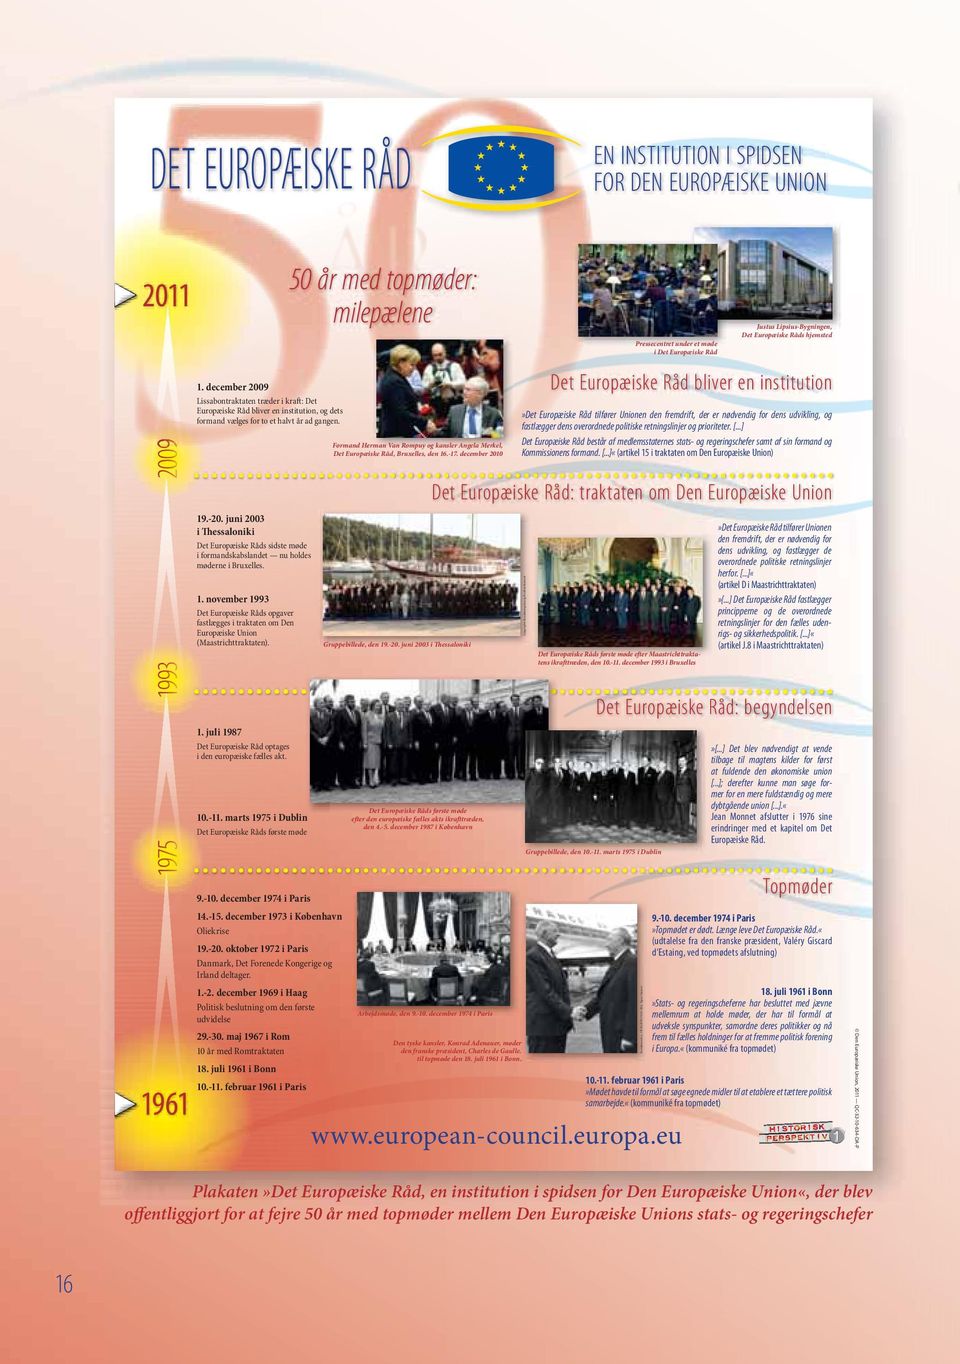 juni 2003 i Thessaloniki Det Europæiske Råds sidste møde i formandskabslandet nu holdes møderne i Bruxelles. 1.